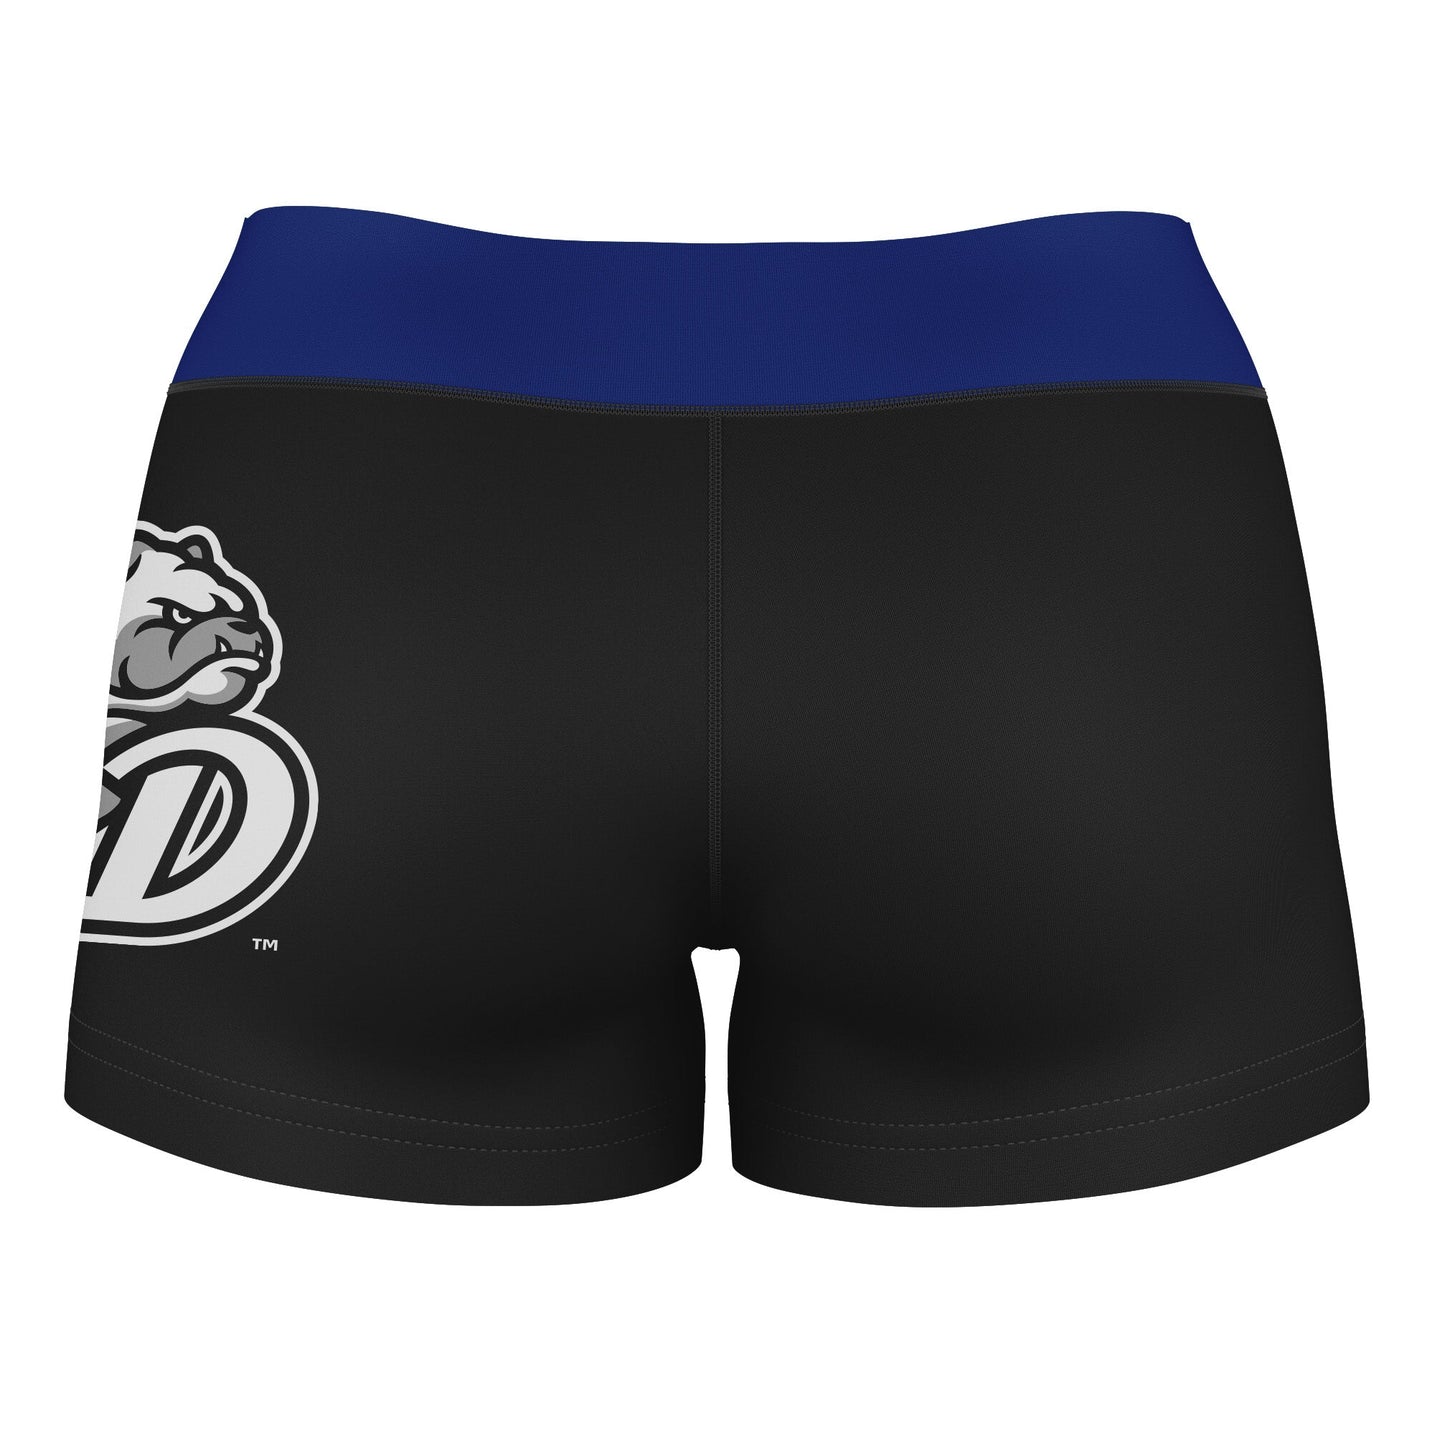 Drake Bulldogs Vive La Fete Game Day Logo on Thigh & Waistband Black & Blue Women Yoga Booty Workout Shorts 3.75 Inseam" - Vive La F̻te - Online Apparel Store